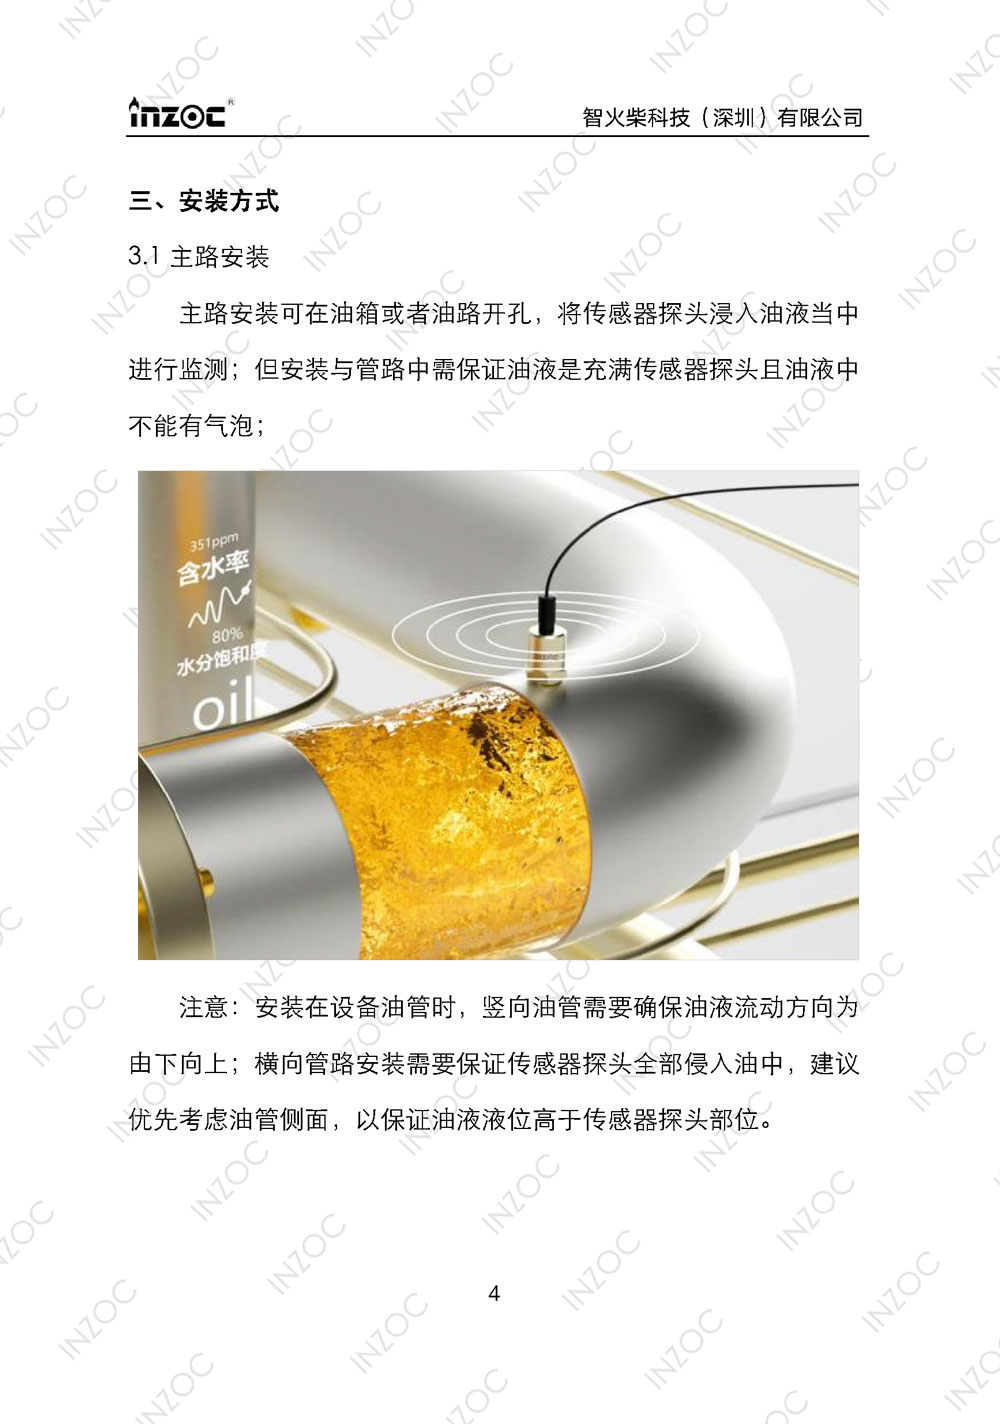 IFW-2A油液微水传感器使用说明书